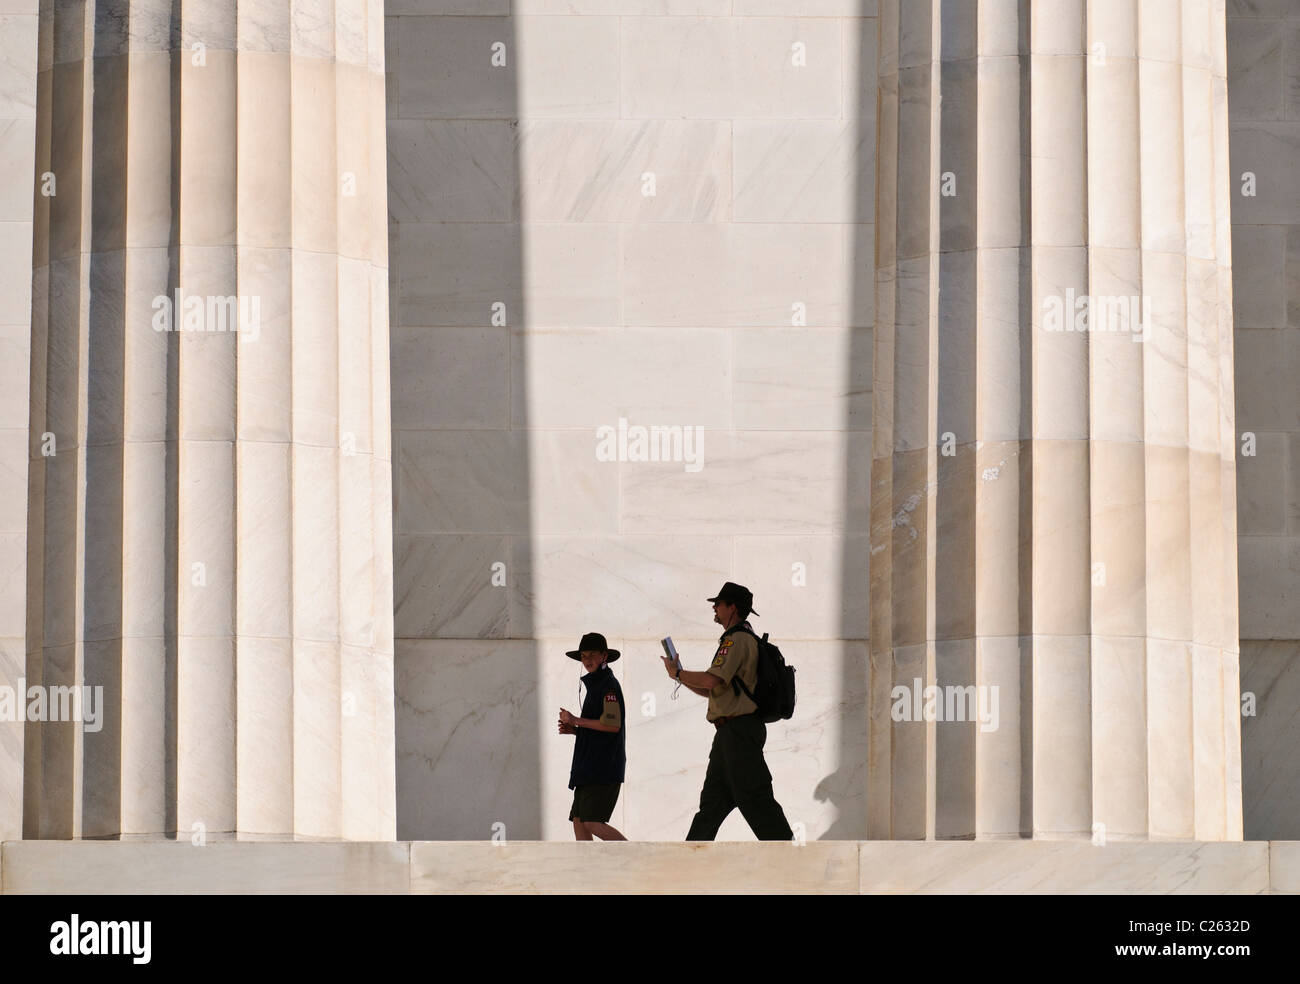 WASHINGTON DC, USA - ein pfadfinderführer und Scout werden durch die massiven Säulen in den Schatten gestellt, als sie das Lincoln Memorial am westlichen Ende der National Mall in Washington DC besuchen Stockfoto